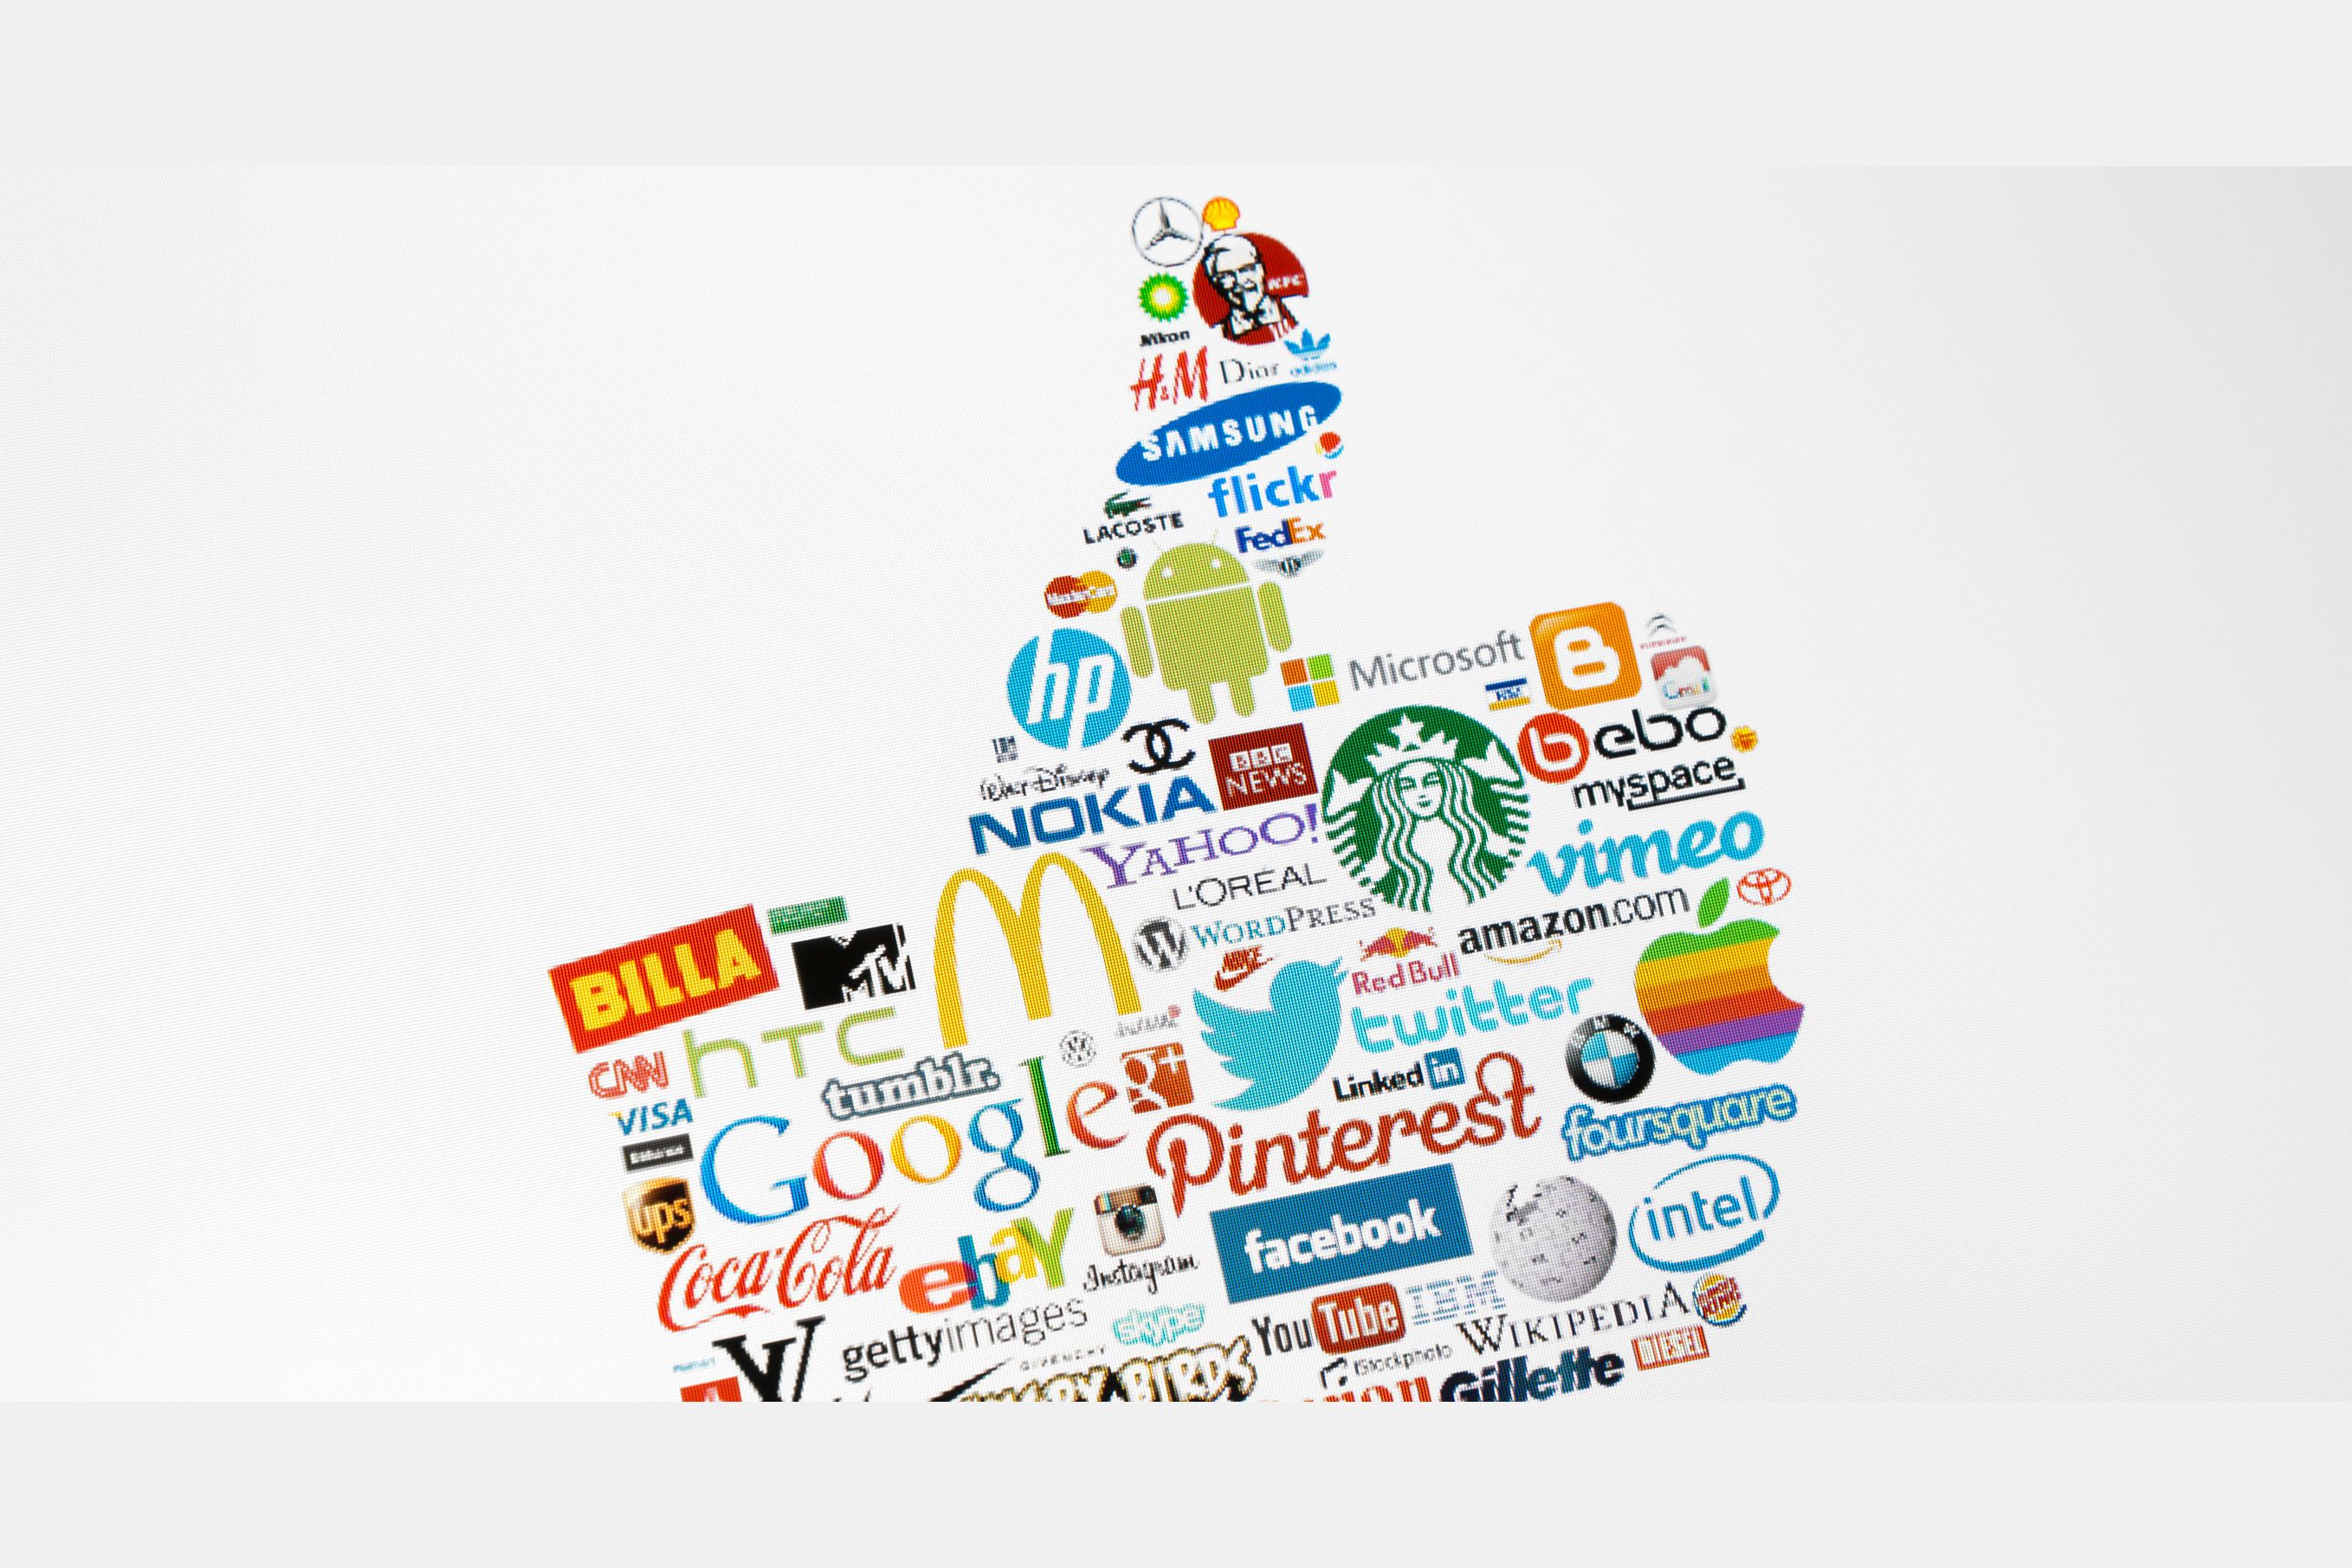 Название рекламной компании. Эмблемы компаний. Рекламные логотипы. Логотипы популярных компаний. Мировые бренды.